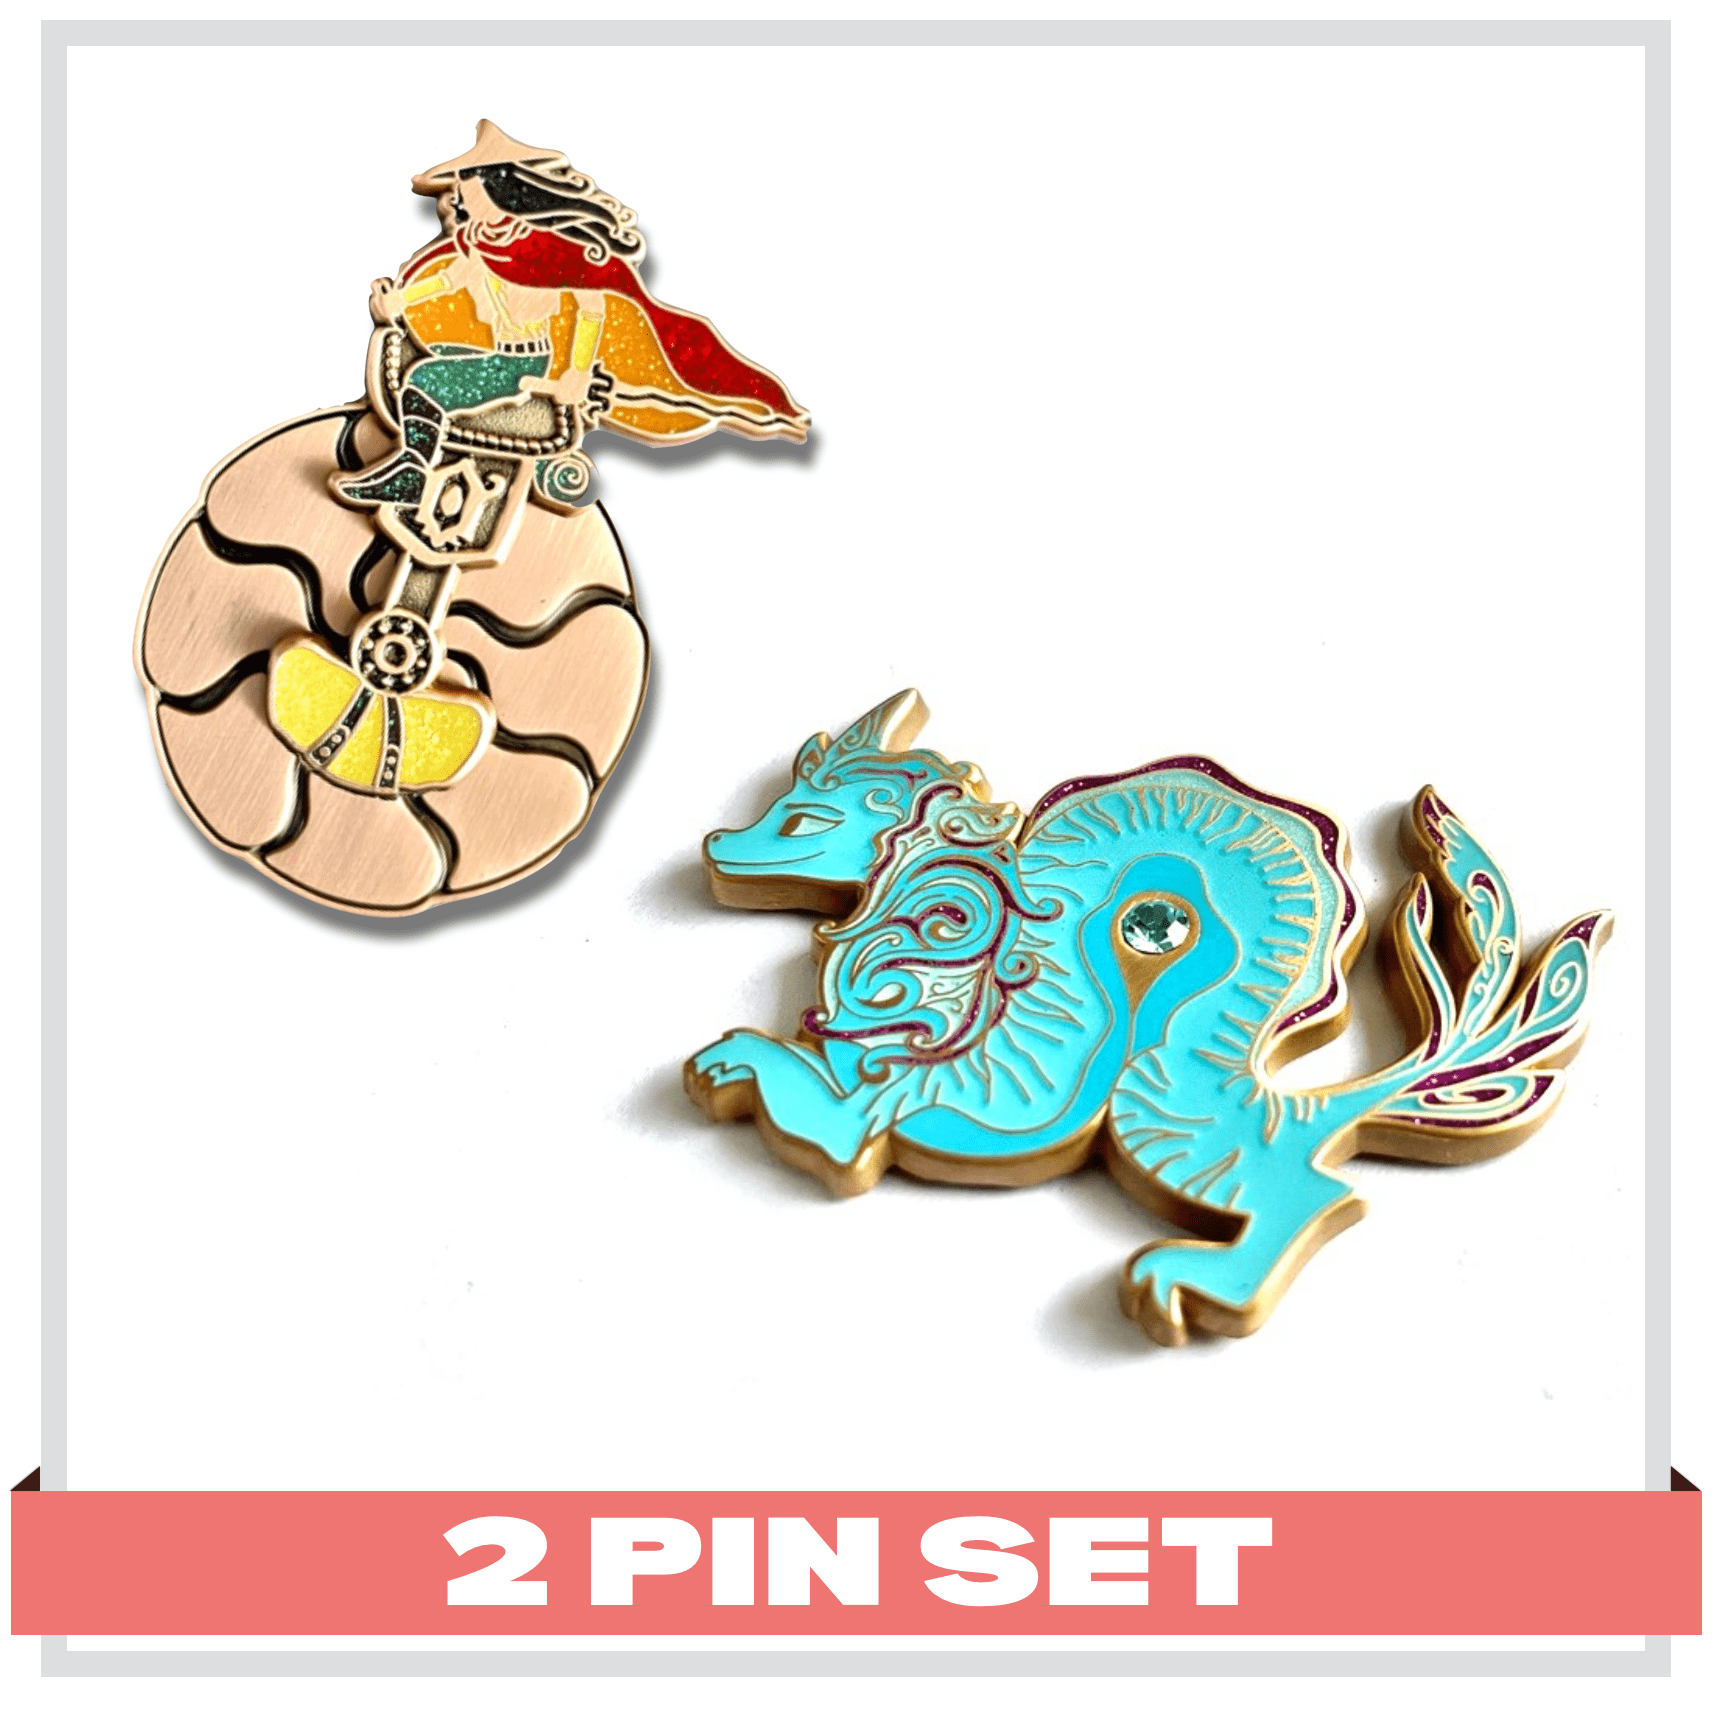 cuddlefish Pin Set & Free Lanyard 2 Pin Set :Dragon Warrior